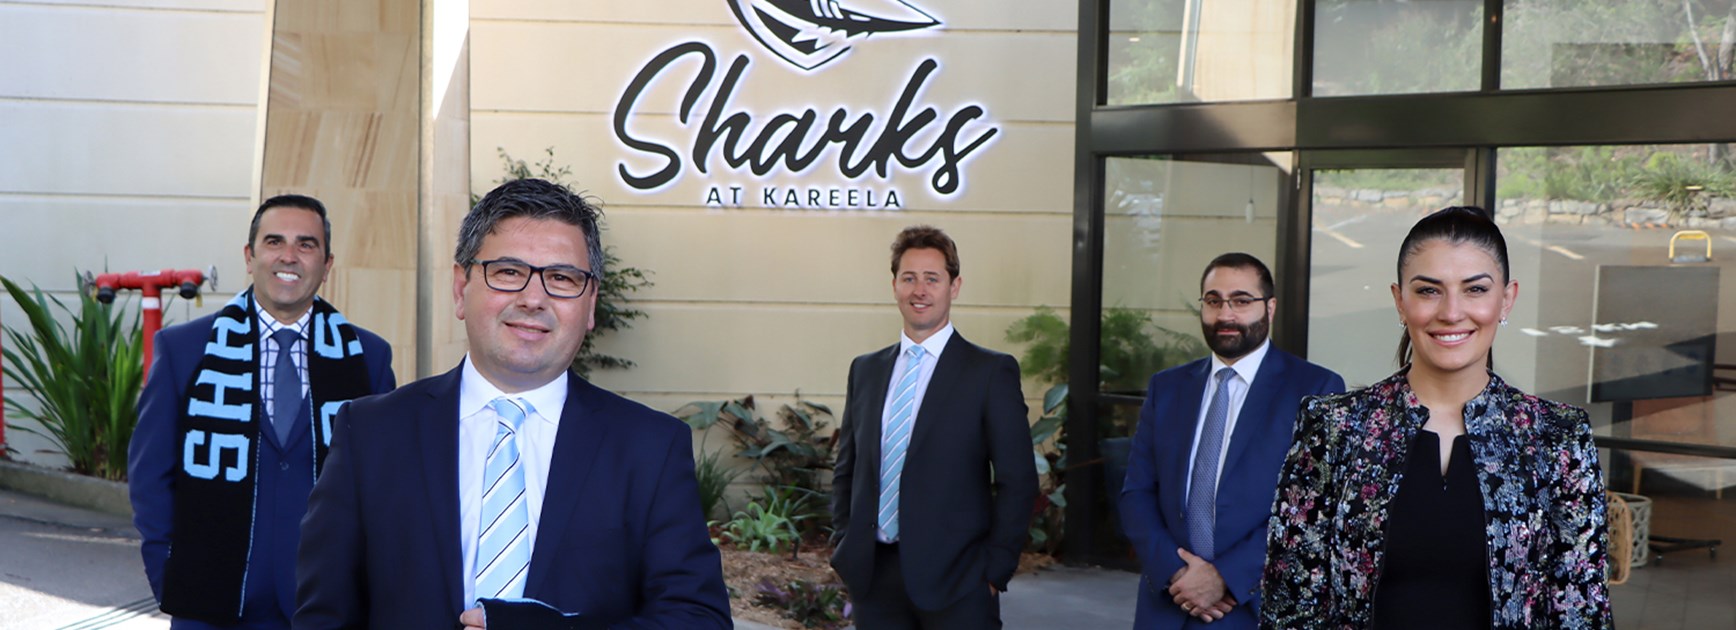 'Sharks at Kareela' open for business